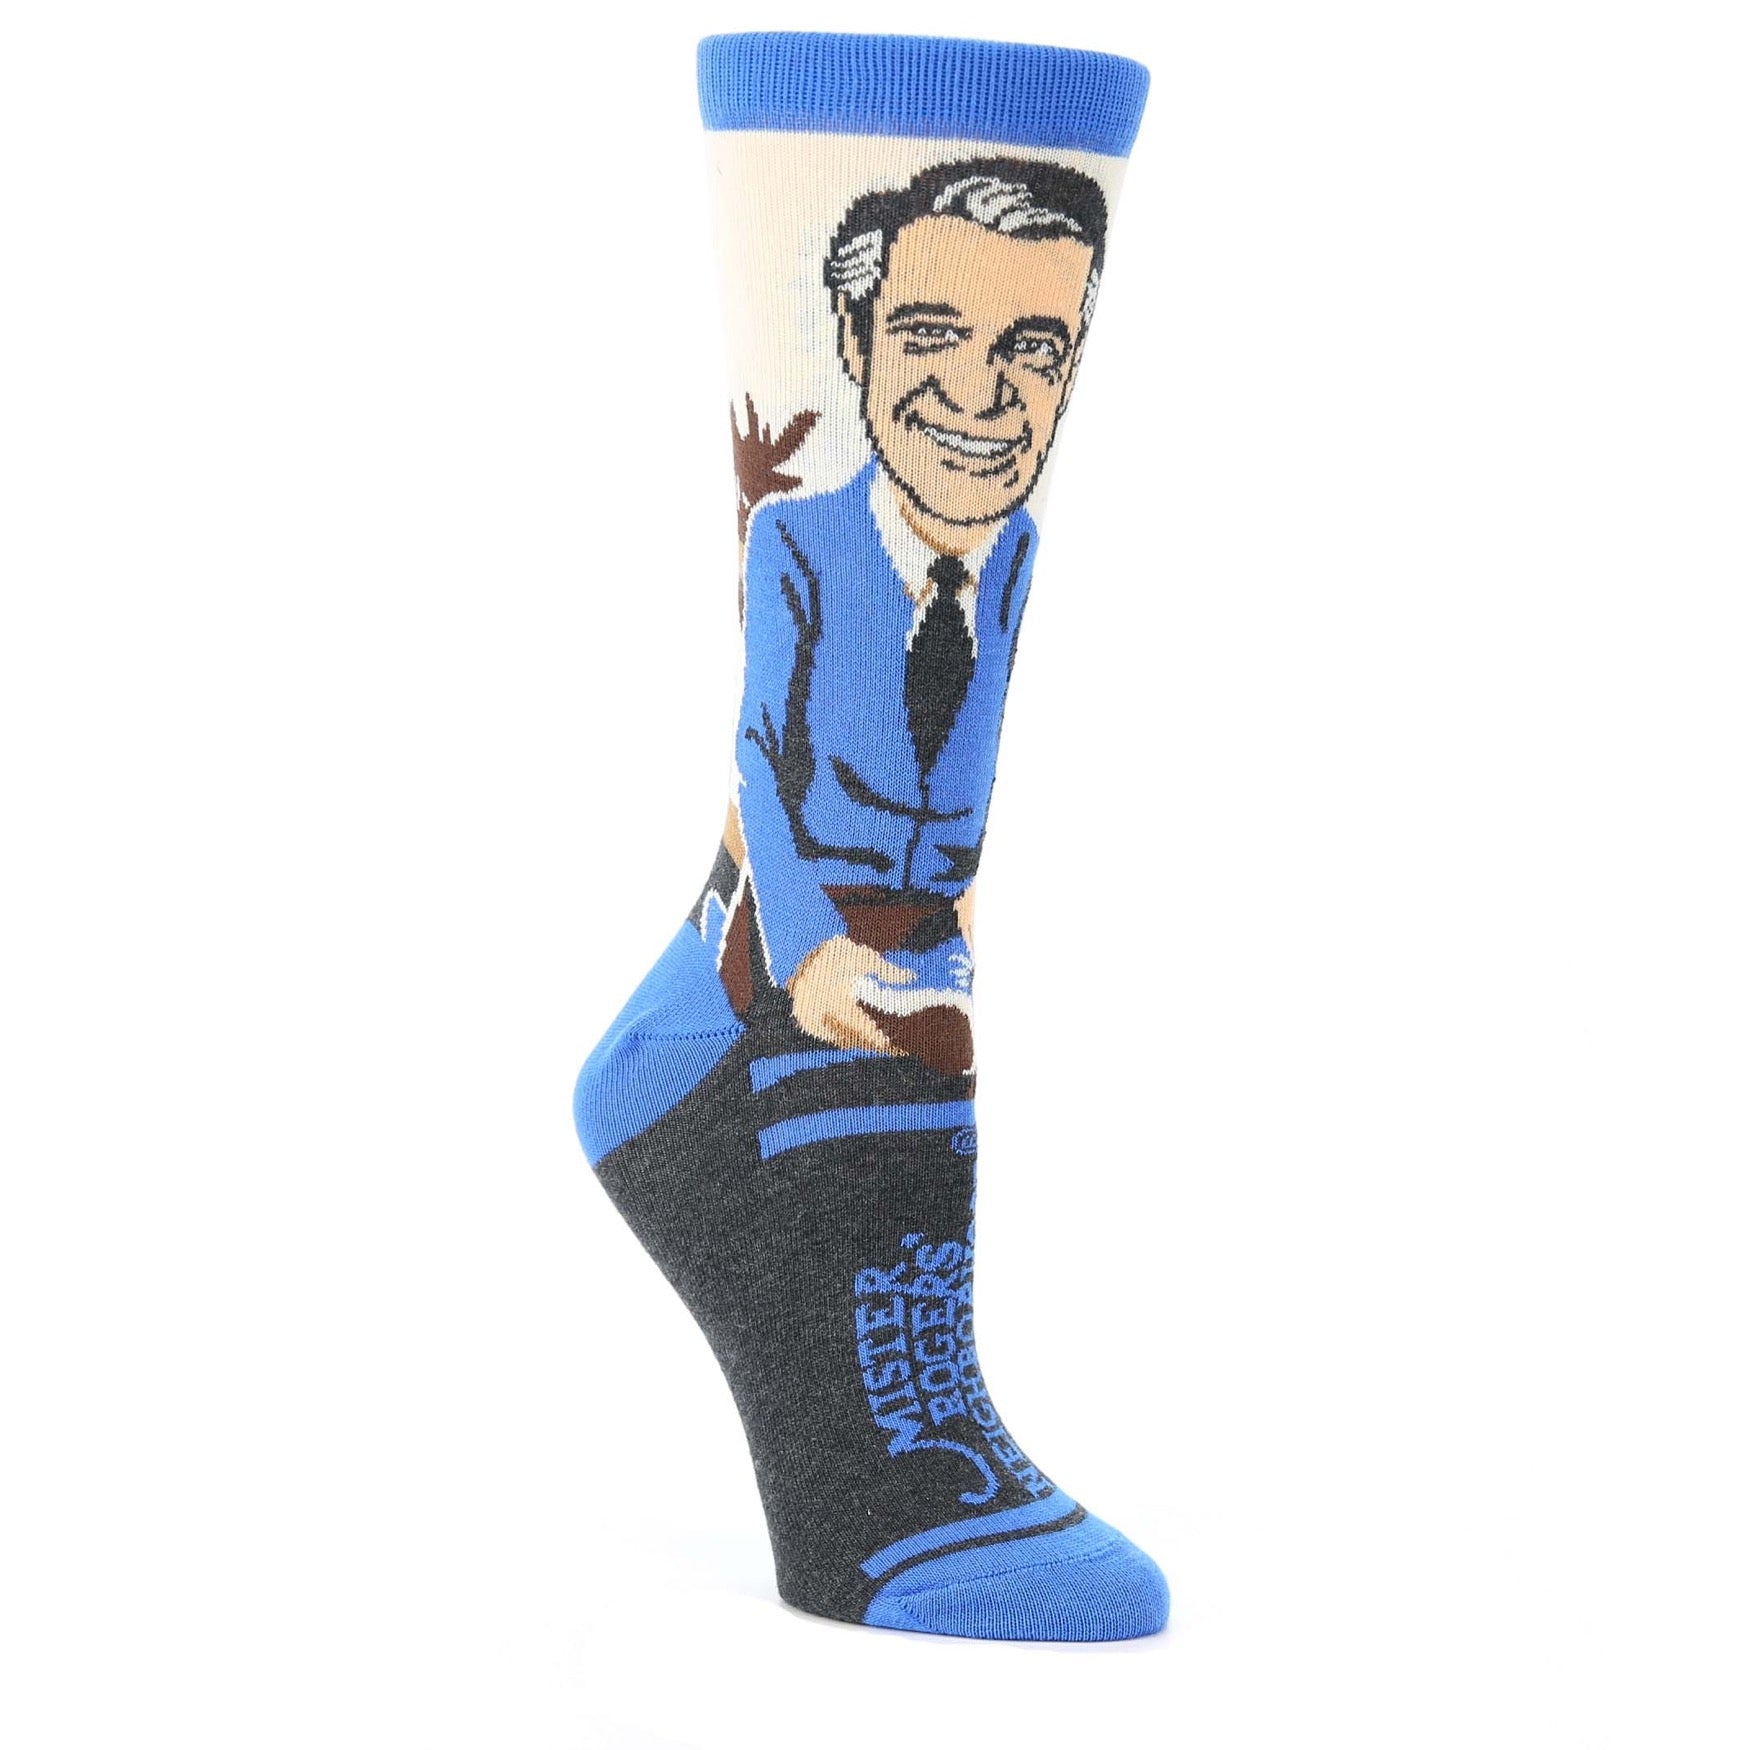 Mister Rogers Socks - Blue Women's Dress Socks